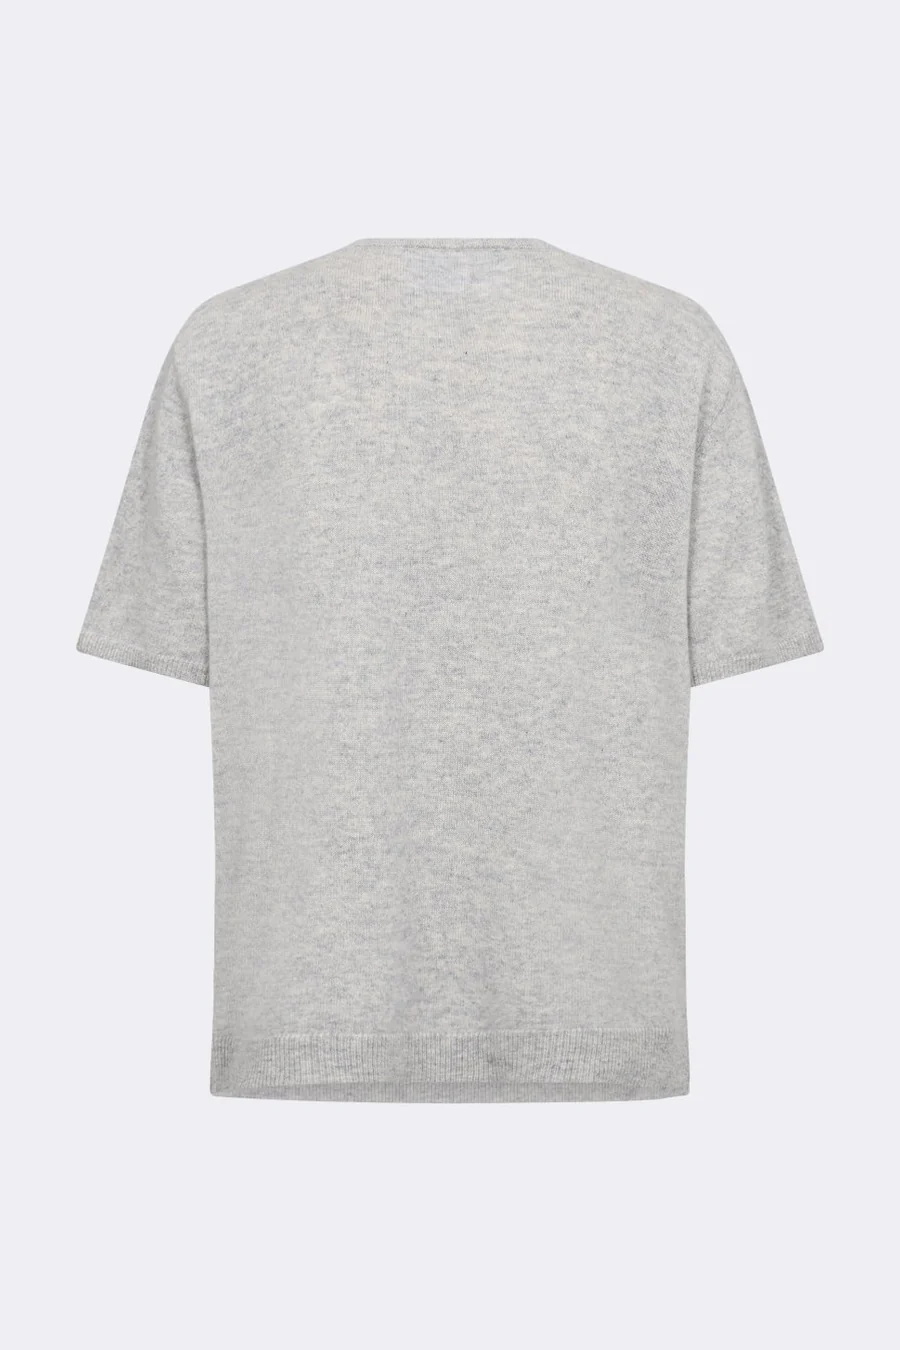 LR-ELOISE 4 T-shirt Grå